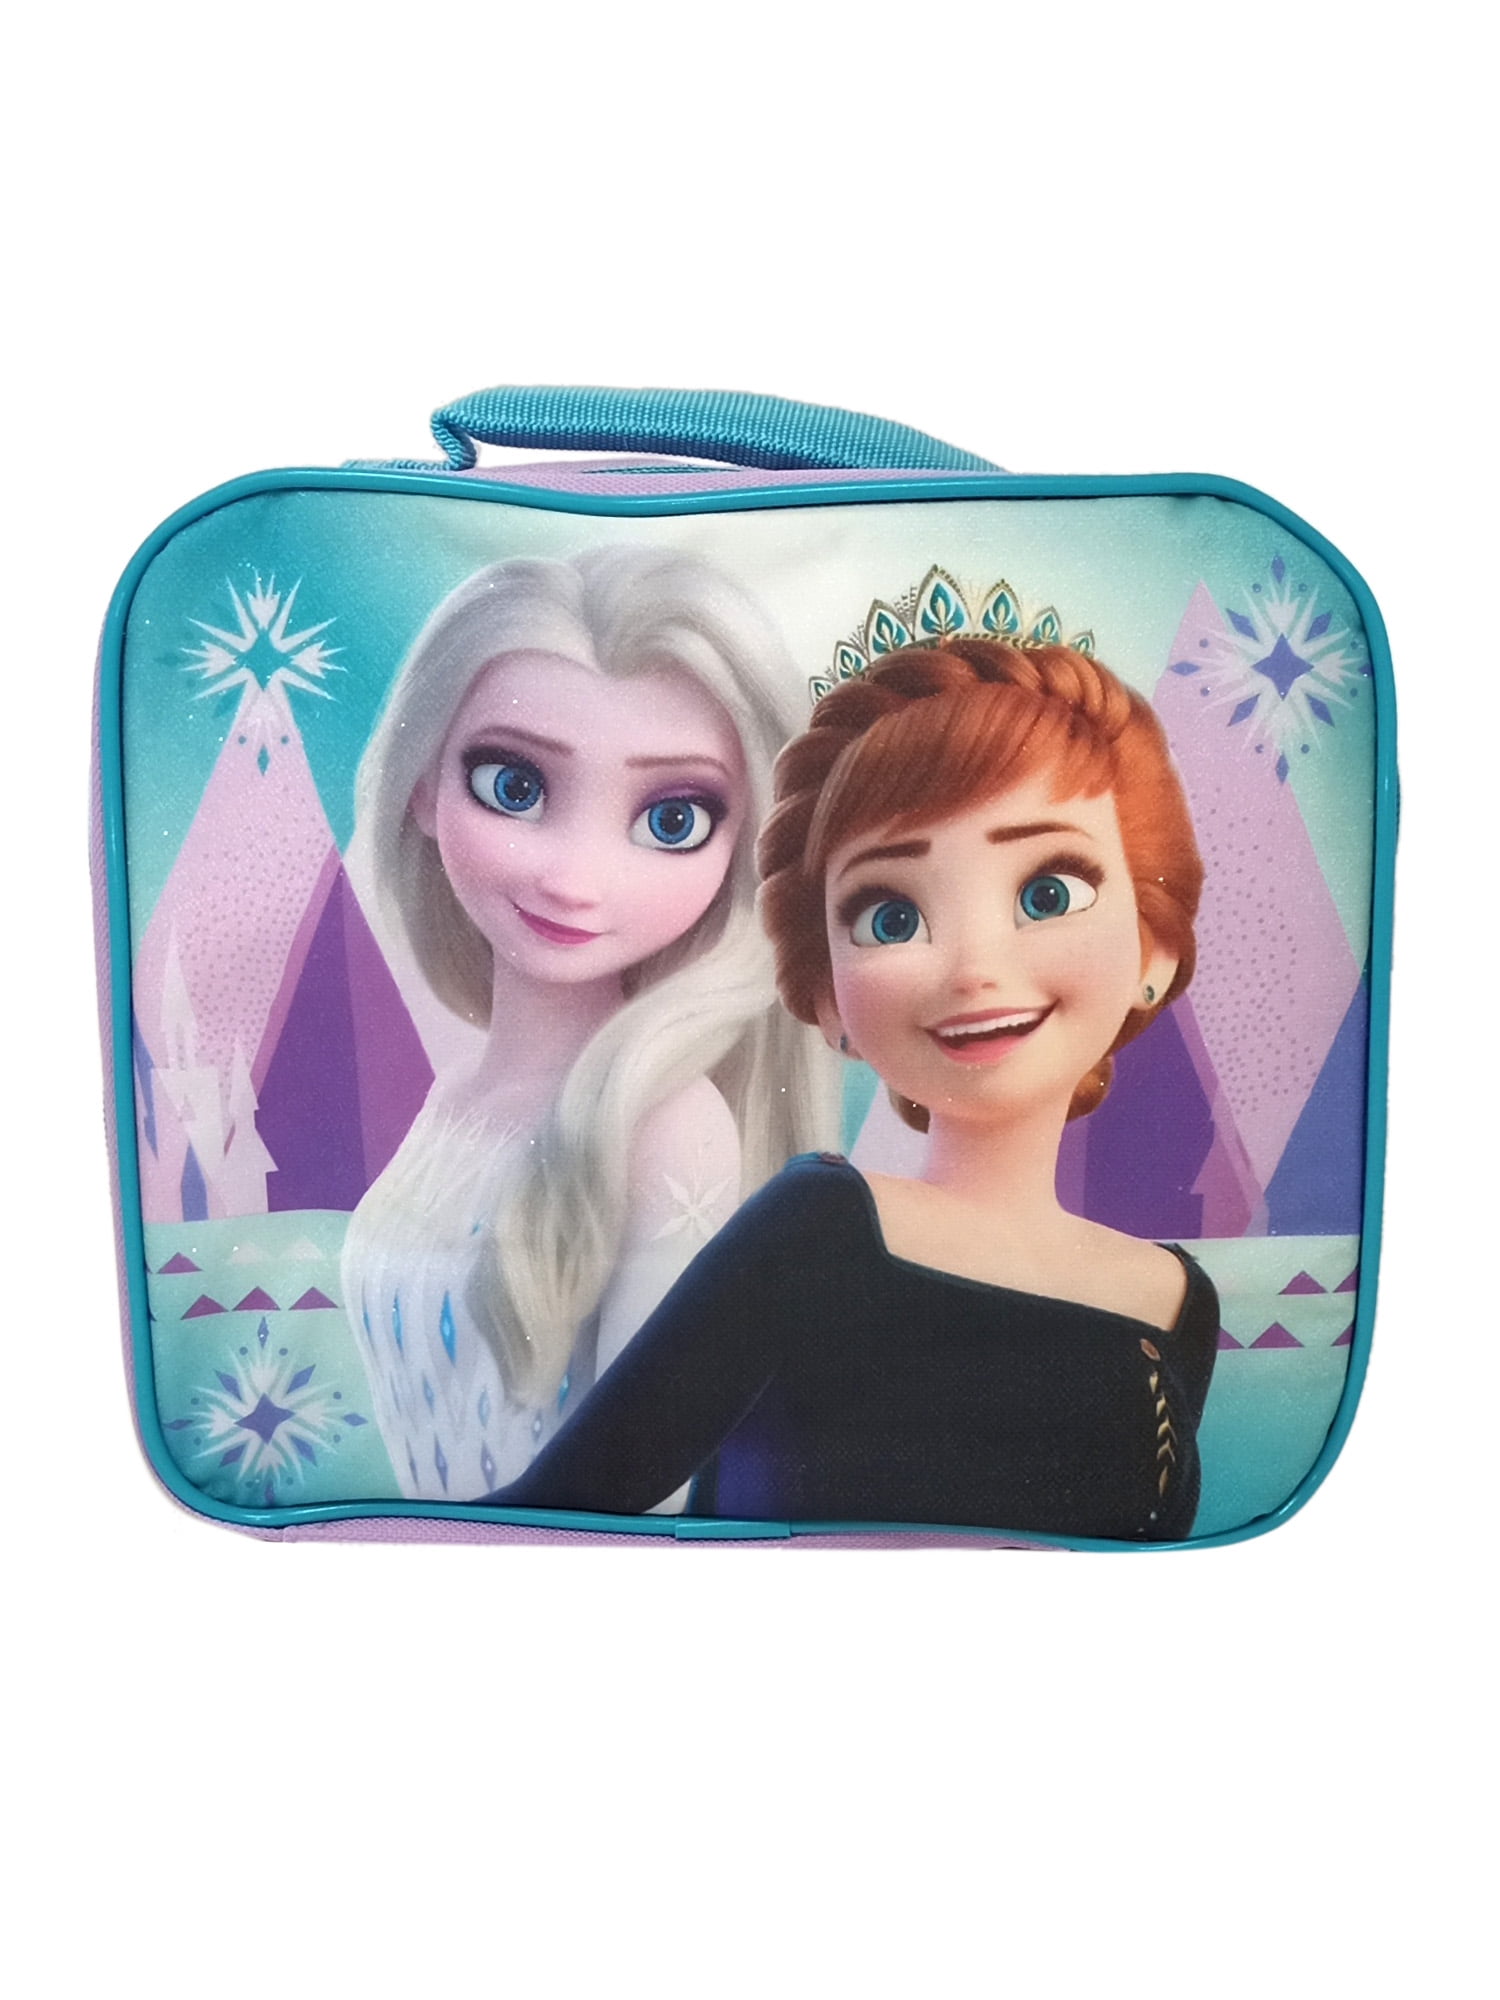 Frozen Lunch Bag Insulated Anna Elsa Disney Girls Princess